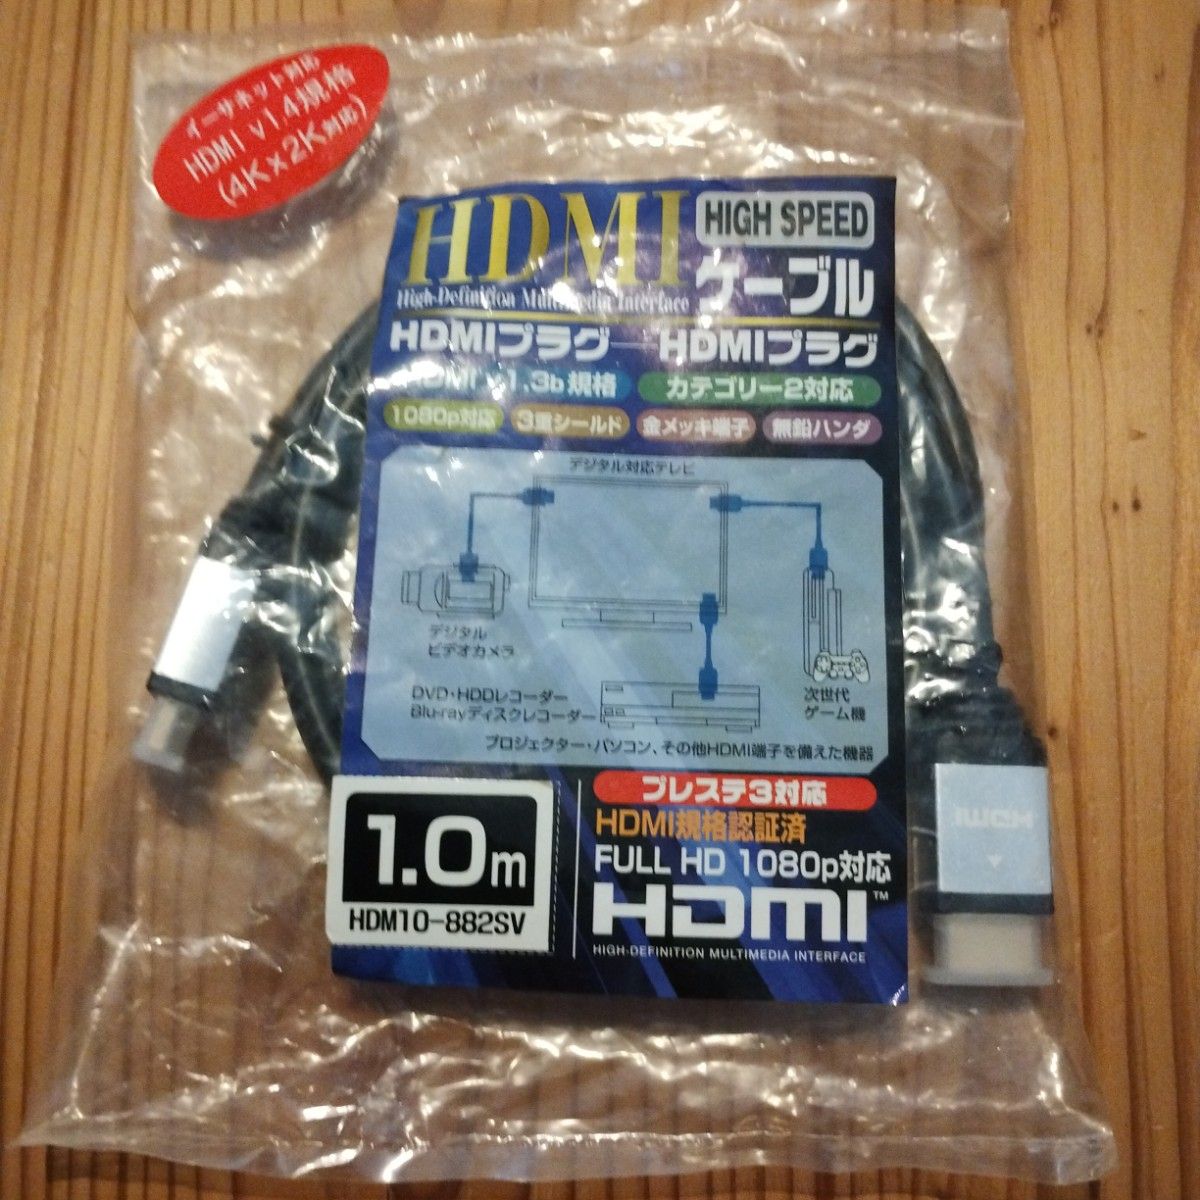 ホーリック プレミアムハイスピードHDMIケーブル 1m 18Gbps 4K/60p HDR HDMI 2.0規格 シルバー